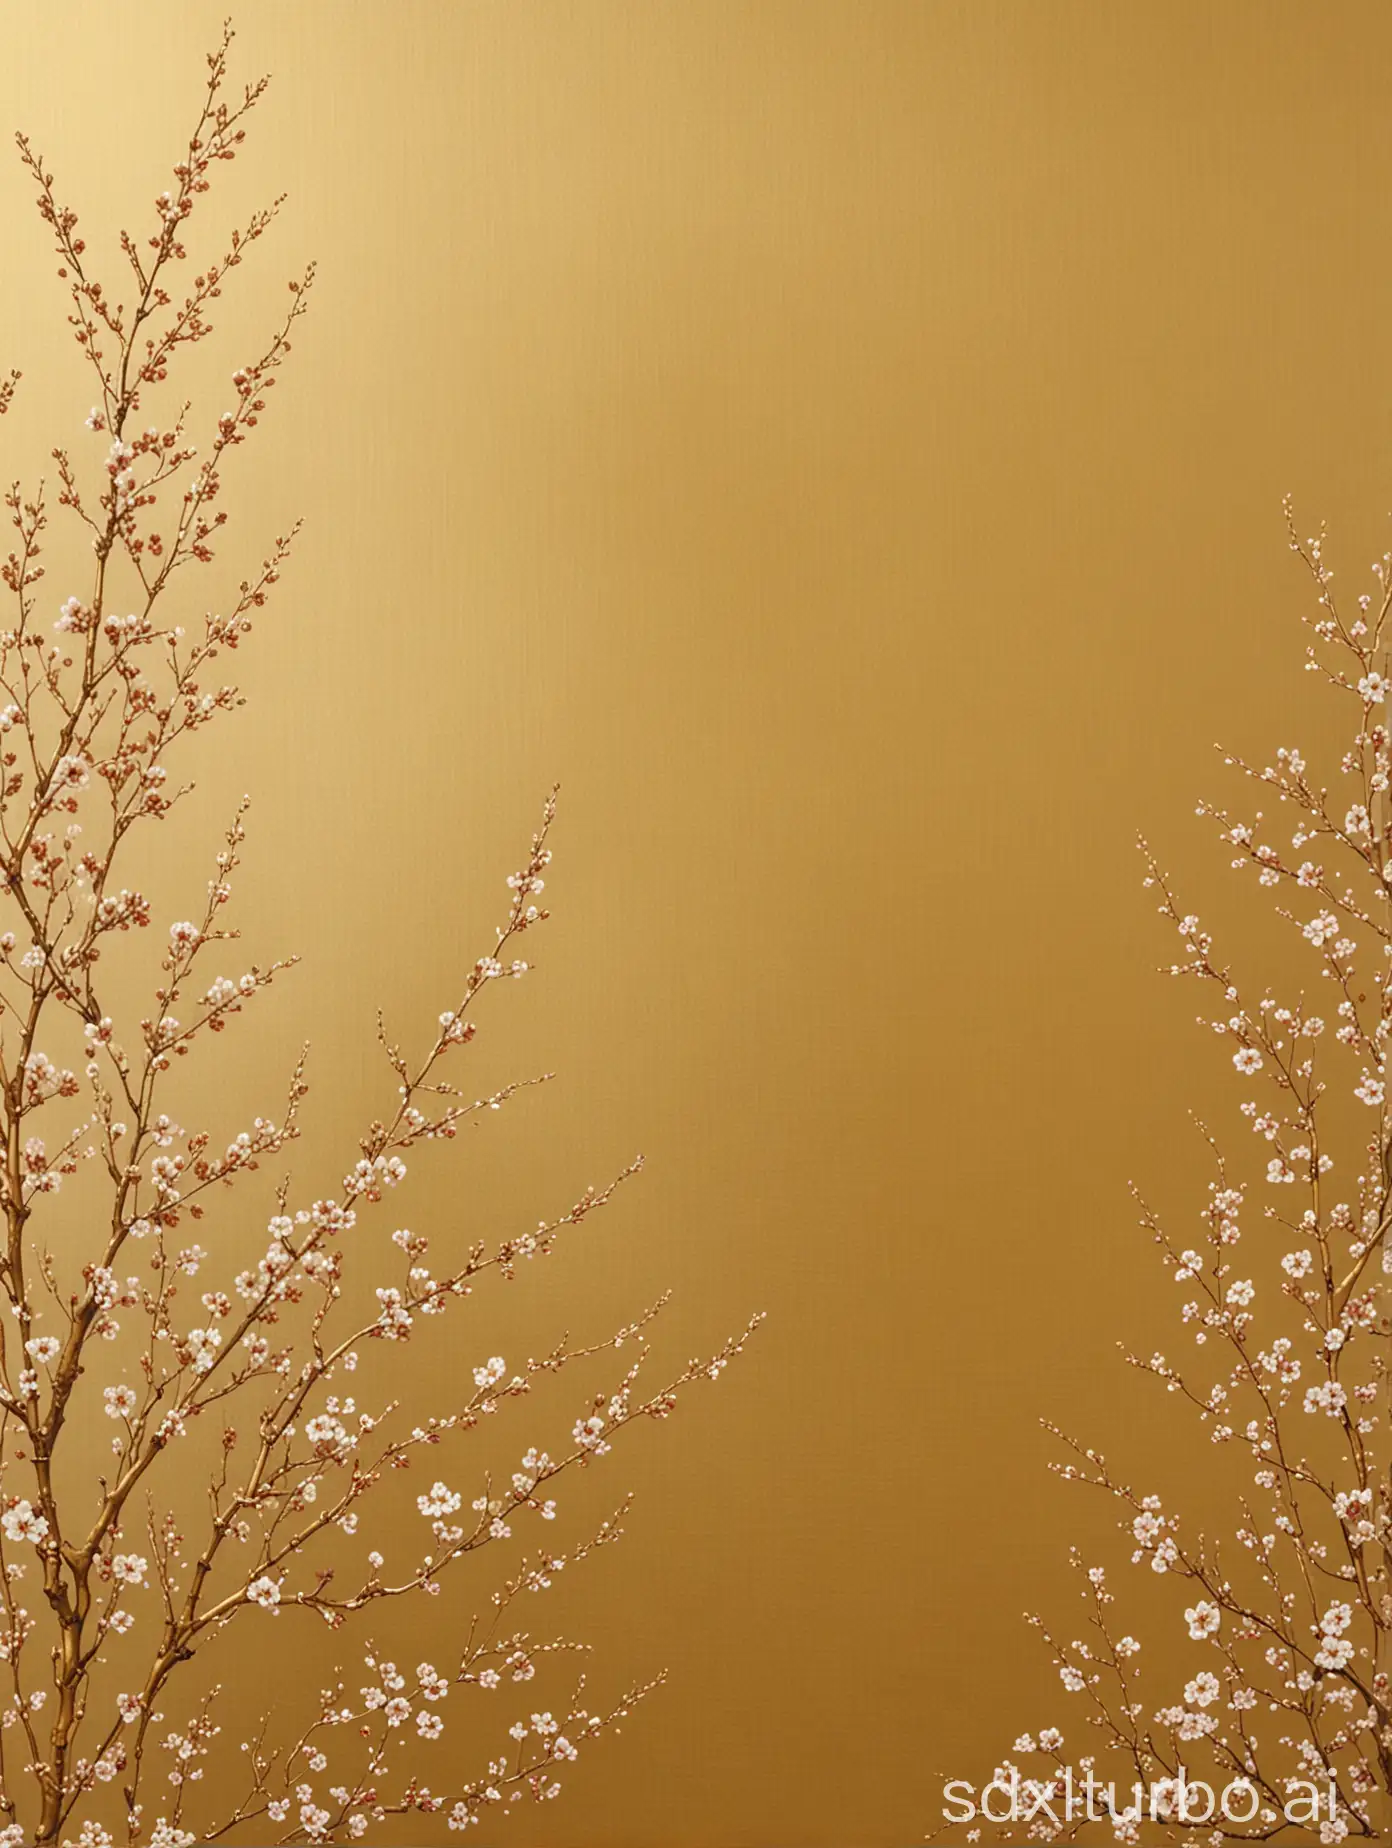 唯美壁纸，金黄色 质感拉丝 横向 小朵梅花